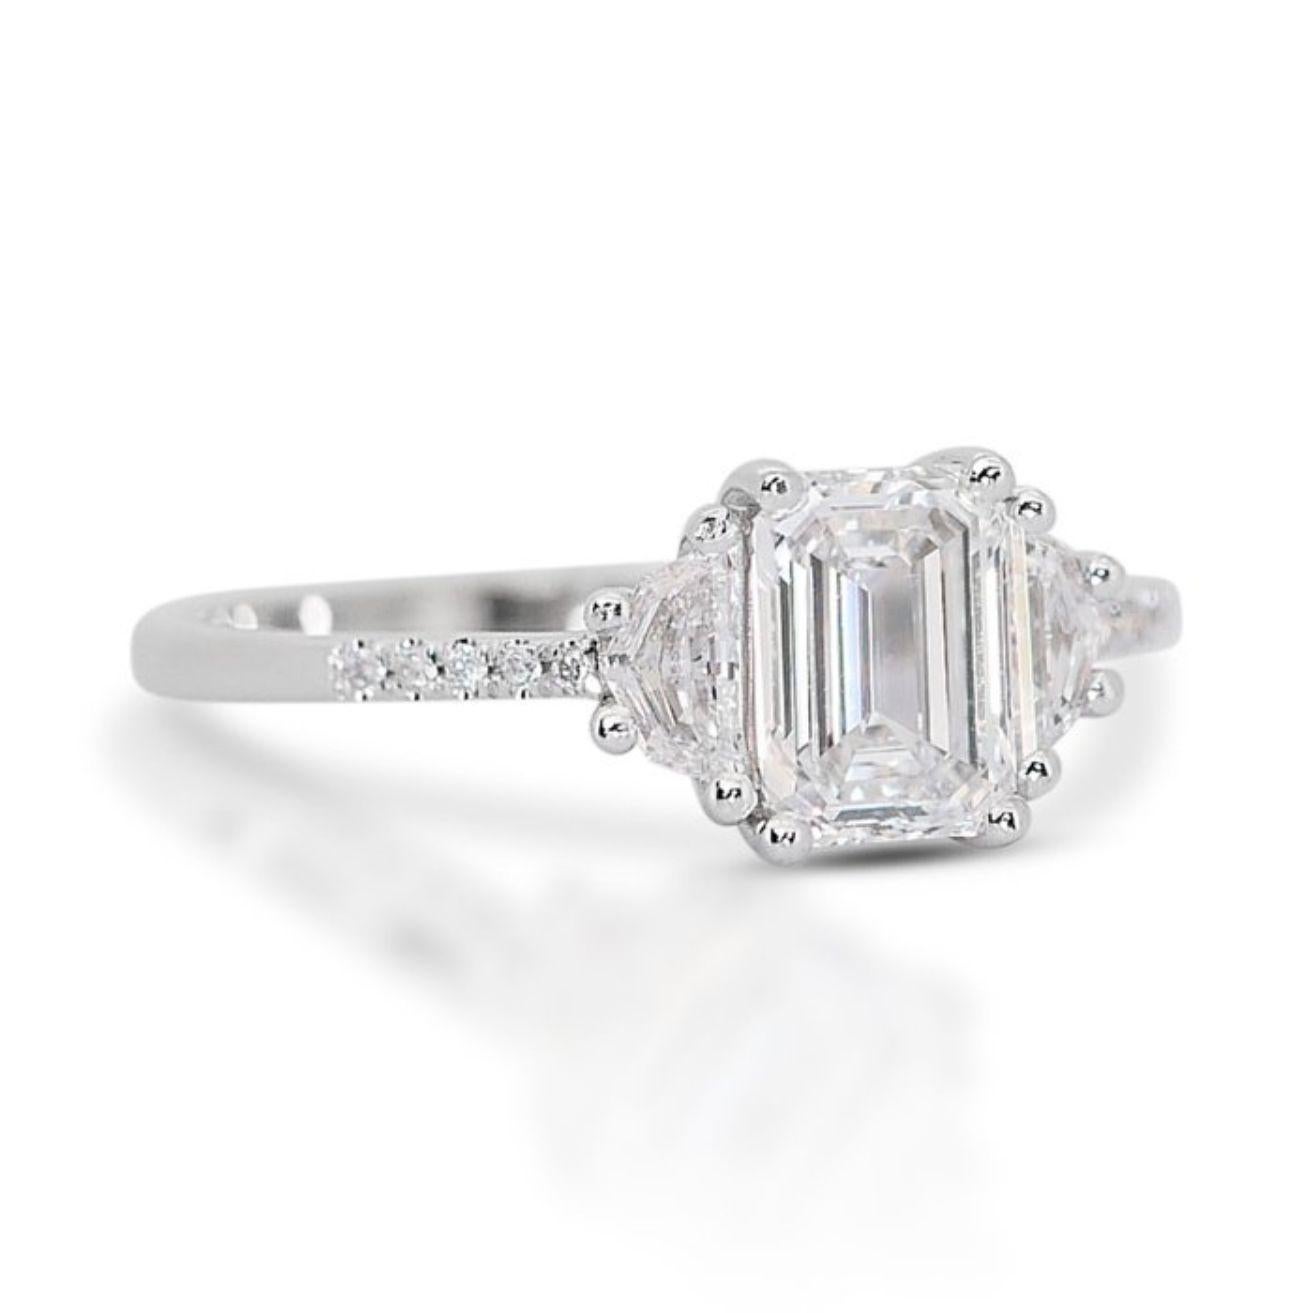 Schillernde Eleganz: 1 Karat Smaragd-Diamantring mit exquisiten Akzenten
Dieser faszinierende Ring mit einem fesselnden 1-Karat-Diamanten im Smaragdschliff bildet das Herzstück dieses unvergleichlichen Rings. Mit einer außergewöhnlichen D-Farbe, dem